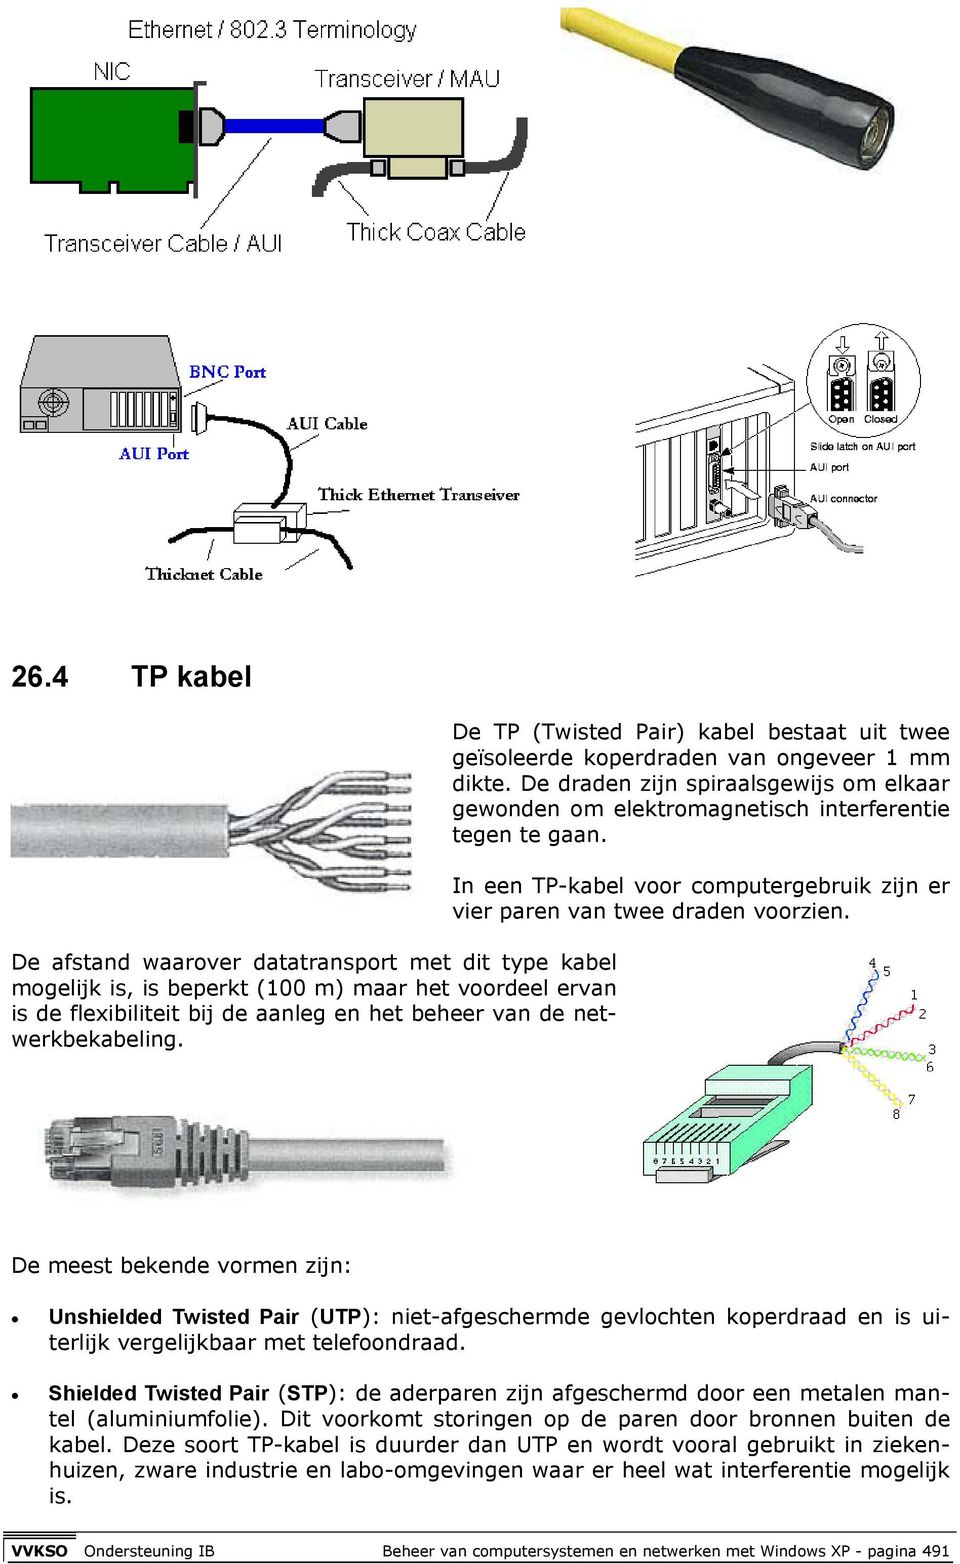 In een TP-kabel voor computergebruik zijn er vier paren van twee draden voorzien.